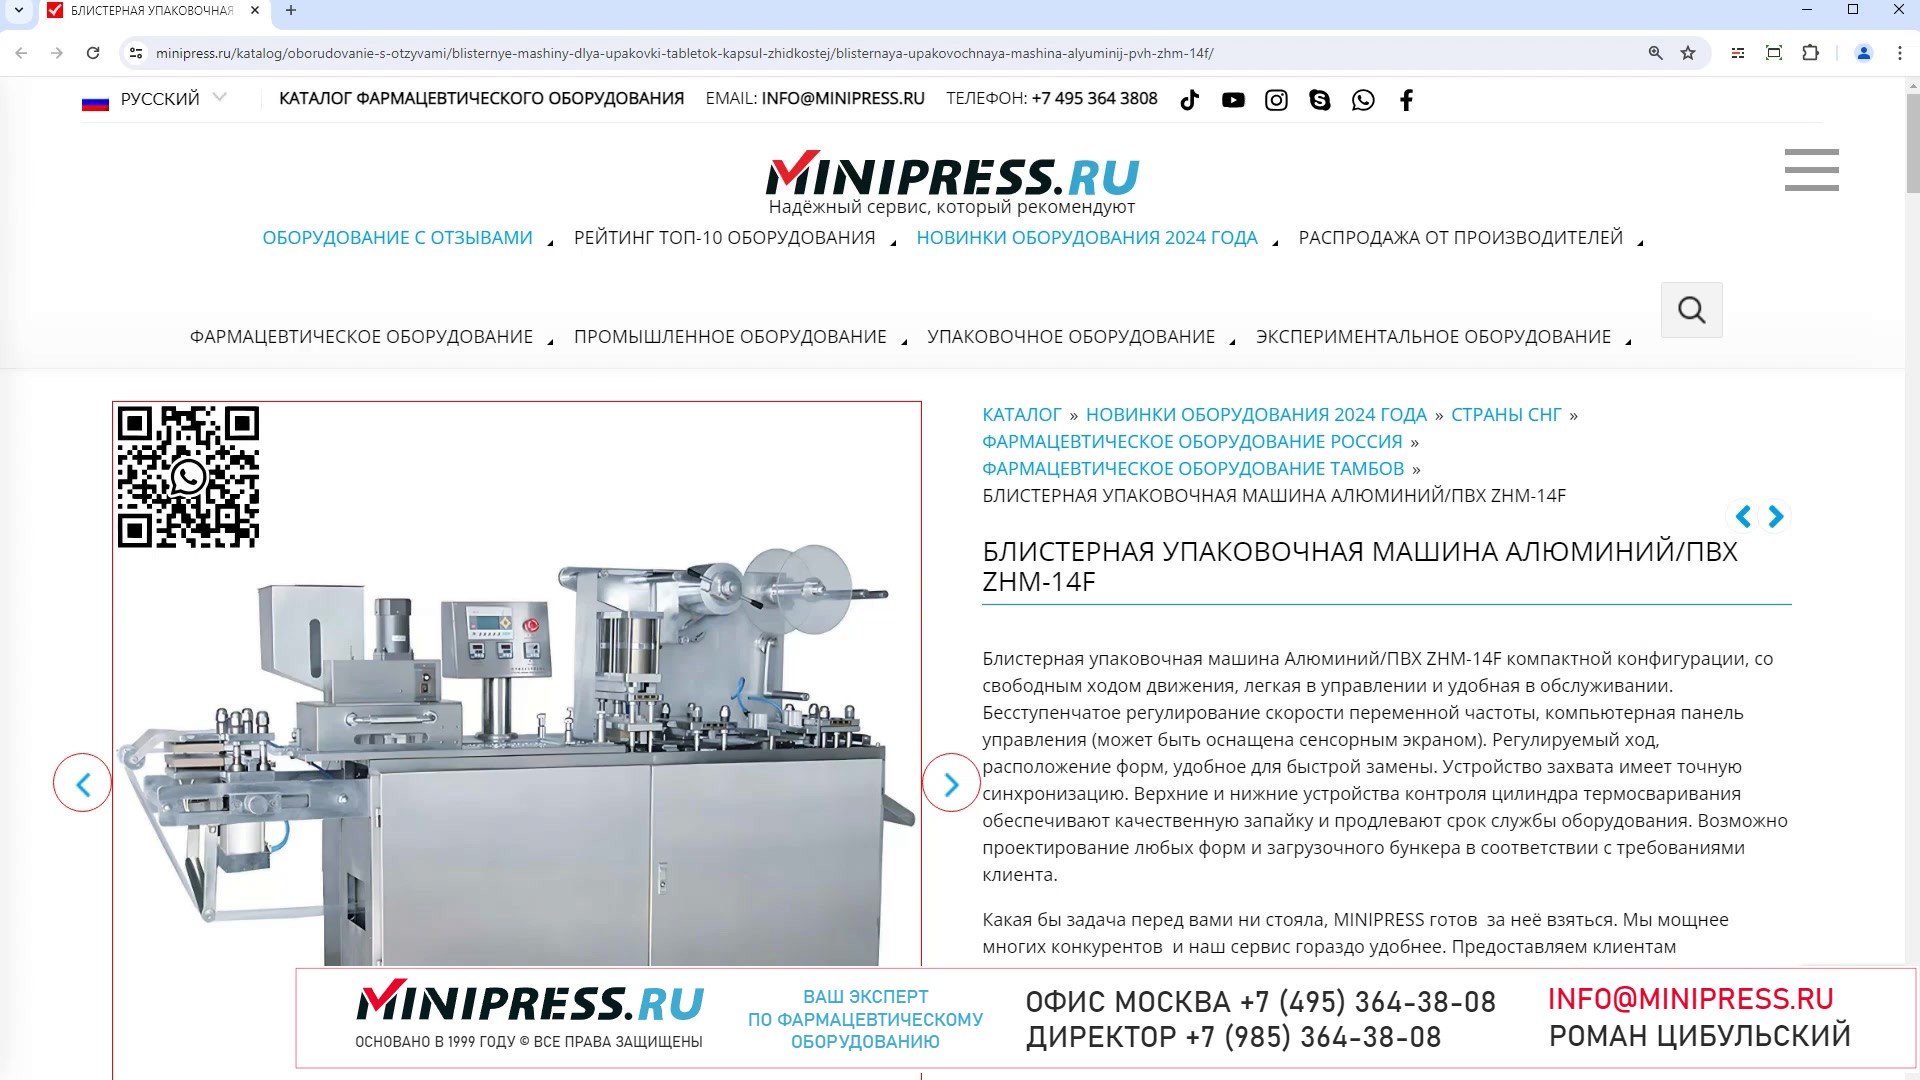 Minipress.ru Блистерная упаковочная машина АлюминийПВХ ZHM-14F